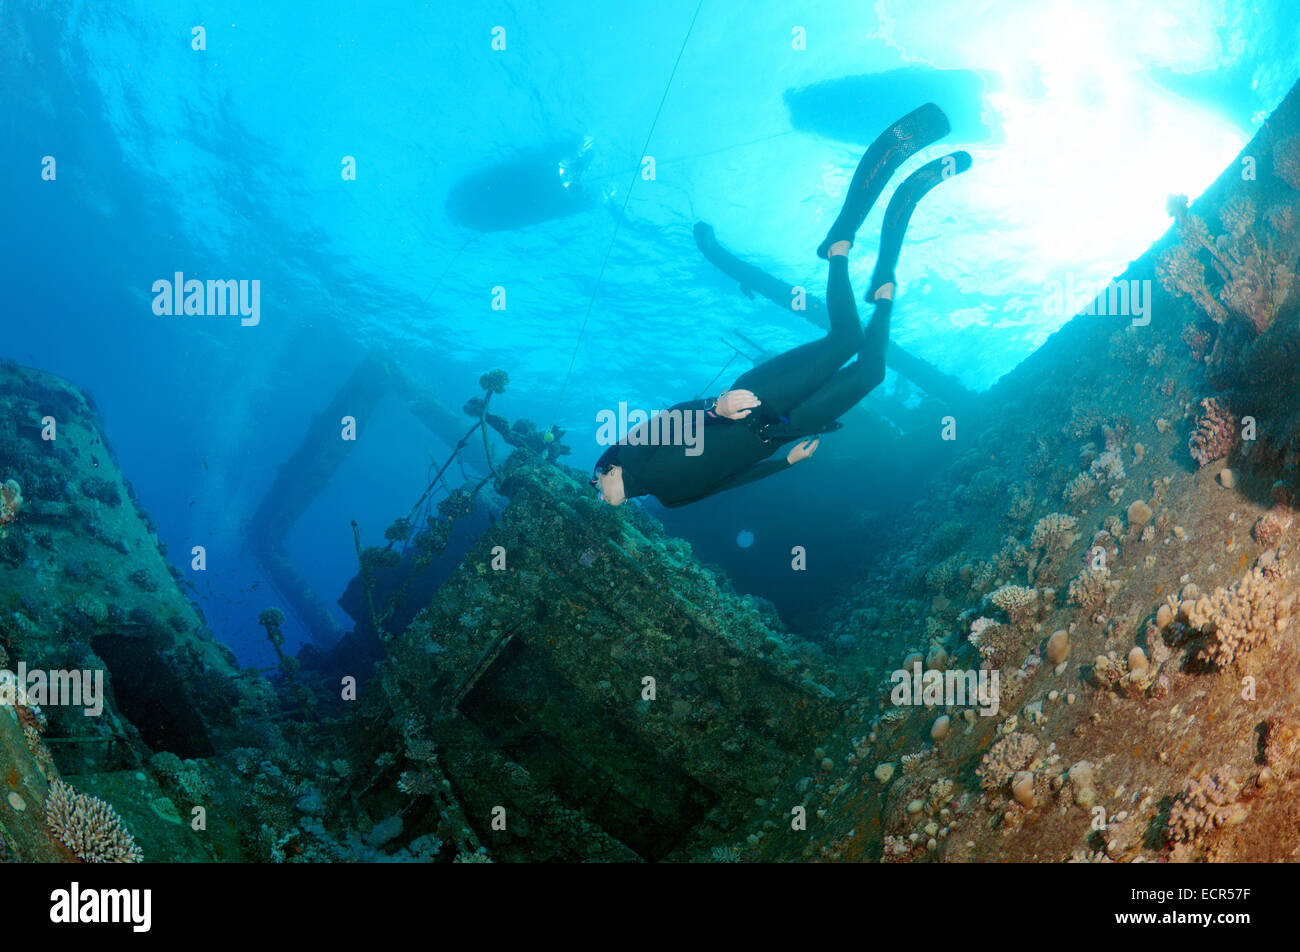 Apneista se zambulle en la wreckship Gianis D. Mar Rojo, Sharm El Sheikh, Egipto Foto de stock